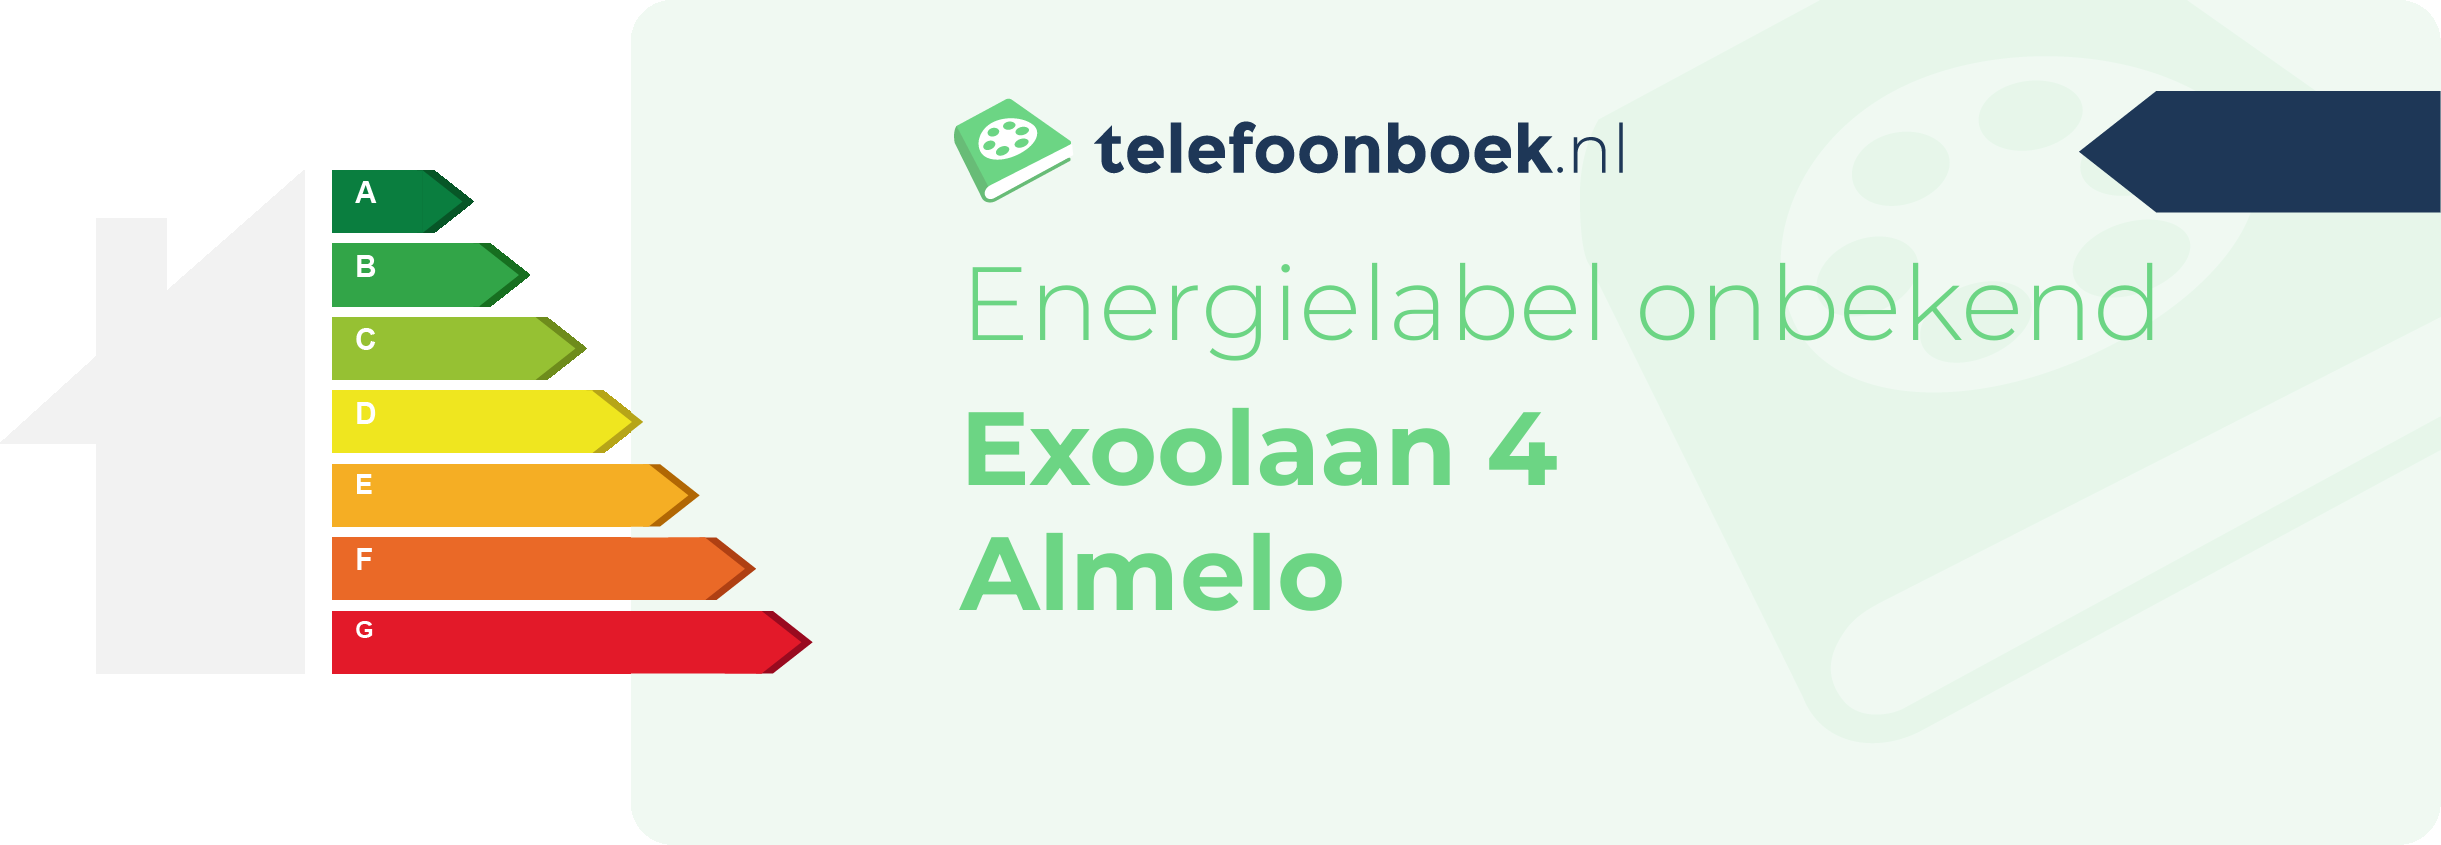 Energielabel Exoolaan 4 Almelo